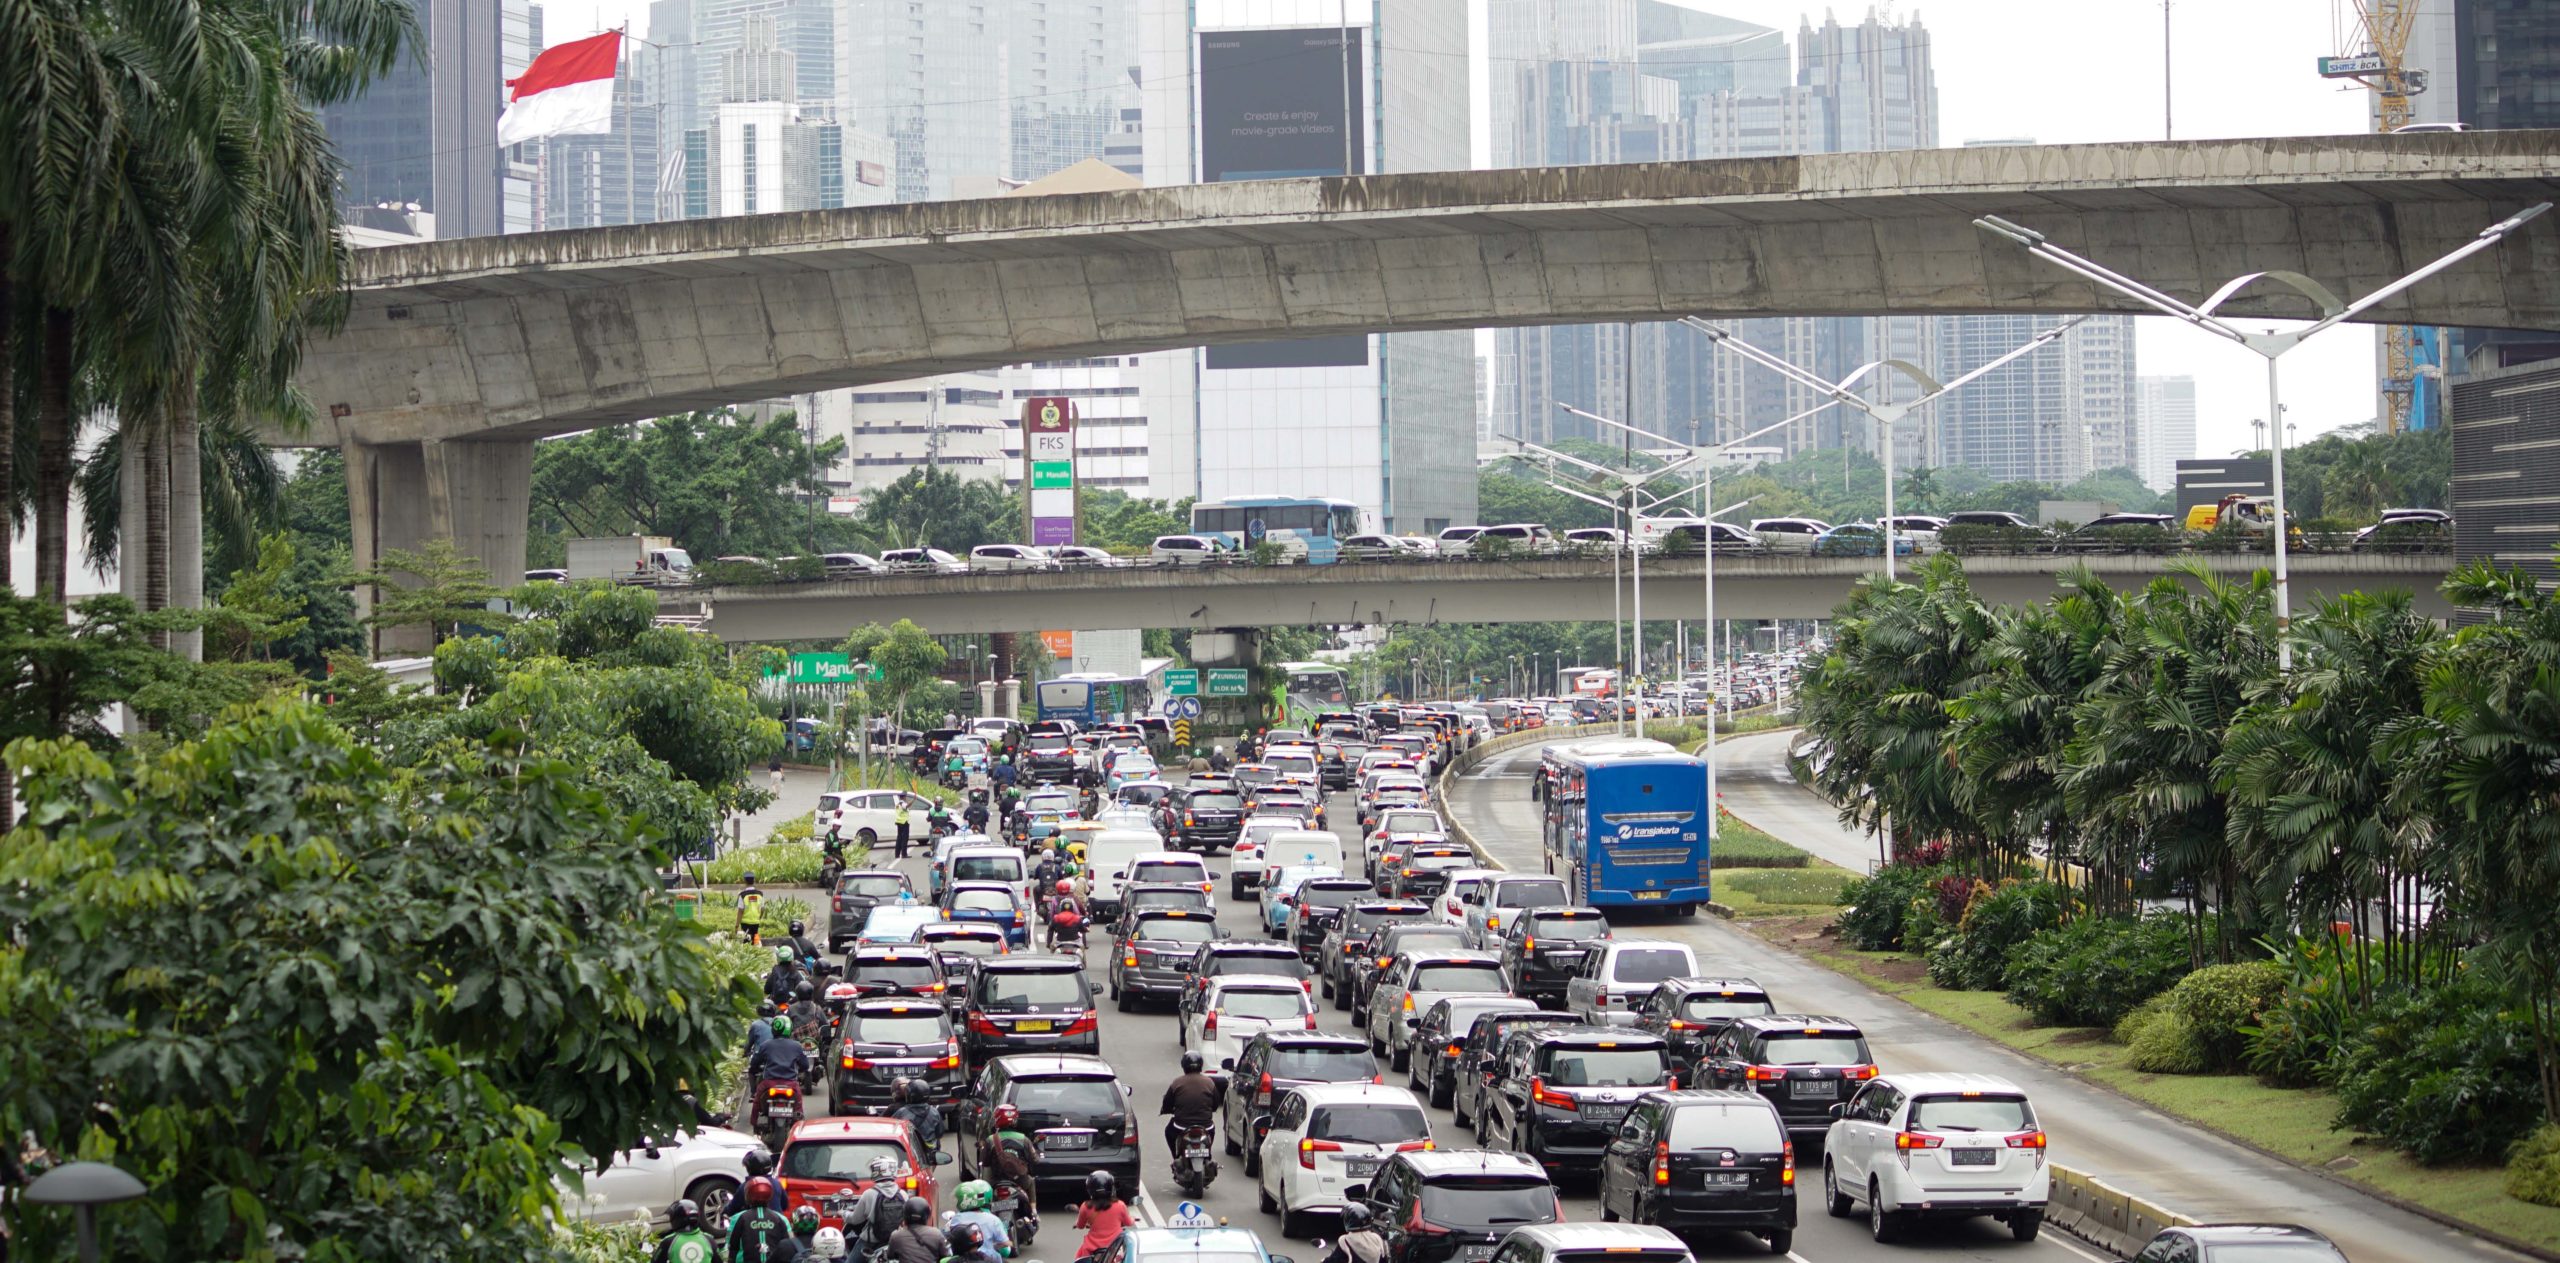 Berdasarkan data inventarisasi Dinas Lingkungan Hidup Jakarta, penyumbang polusi udara, 75% transportasi darat, 8% industri, 9% pembangkit listrik dan pemanas, dan 8% pembakaran domestik. Kendaraan bermotor yang melewati jalan di ibukota, berdasarkan data statistik transportasi Jakarta terus meningkat setiap tahun. Foto: Lusia Arumingtyas/ Mongabay Indonesia